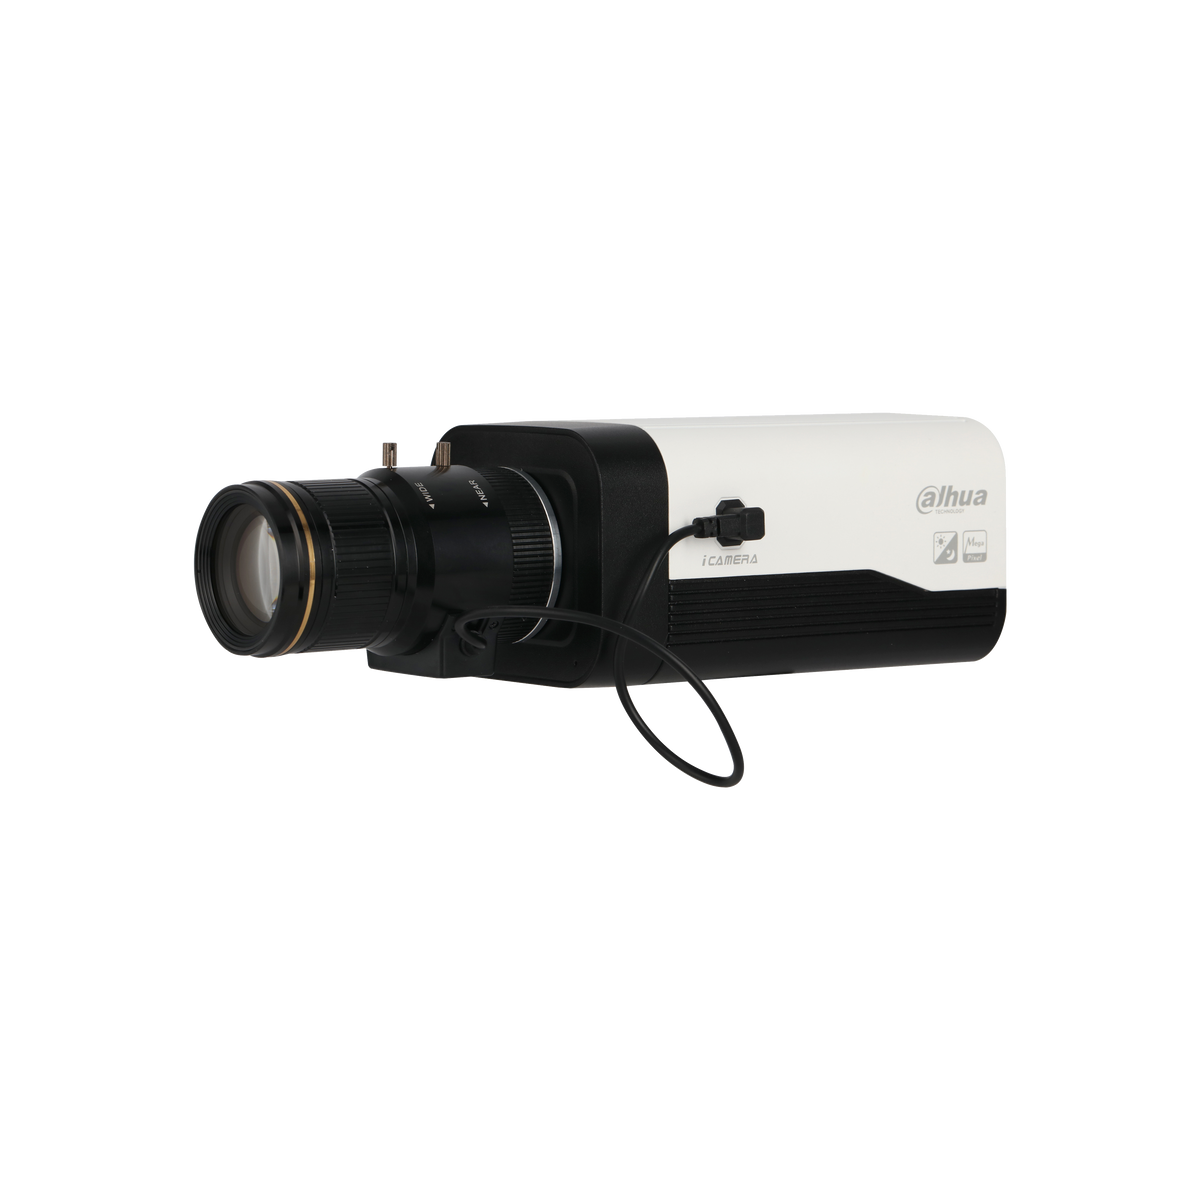 DAHUA IPC-HF8242F-FD 2MP Starlight Face Detection Box AI Network Camera